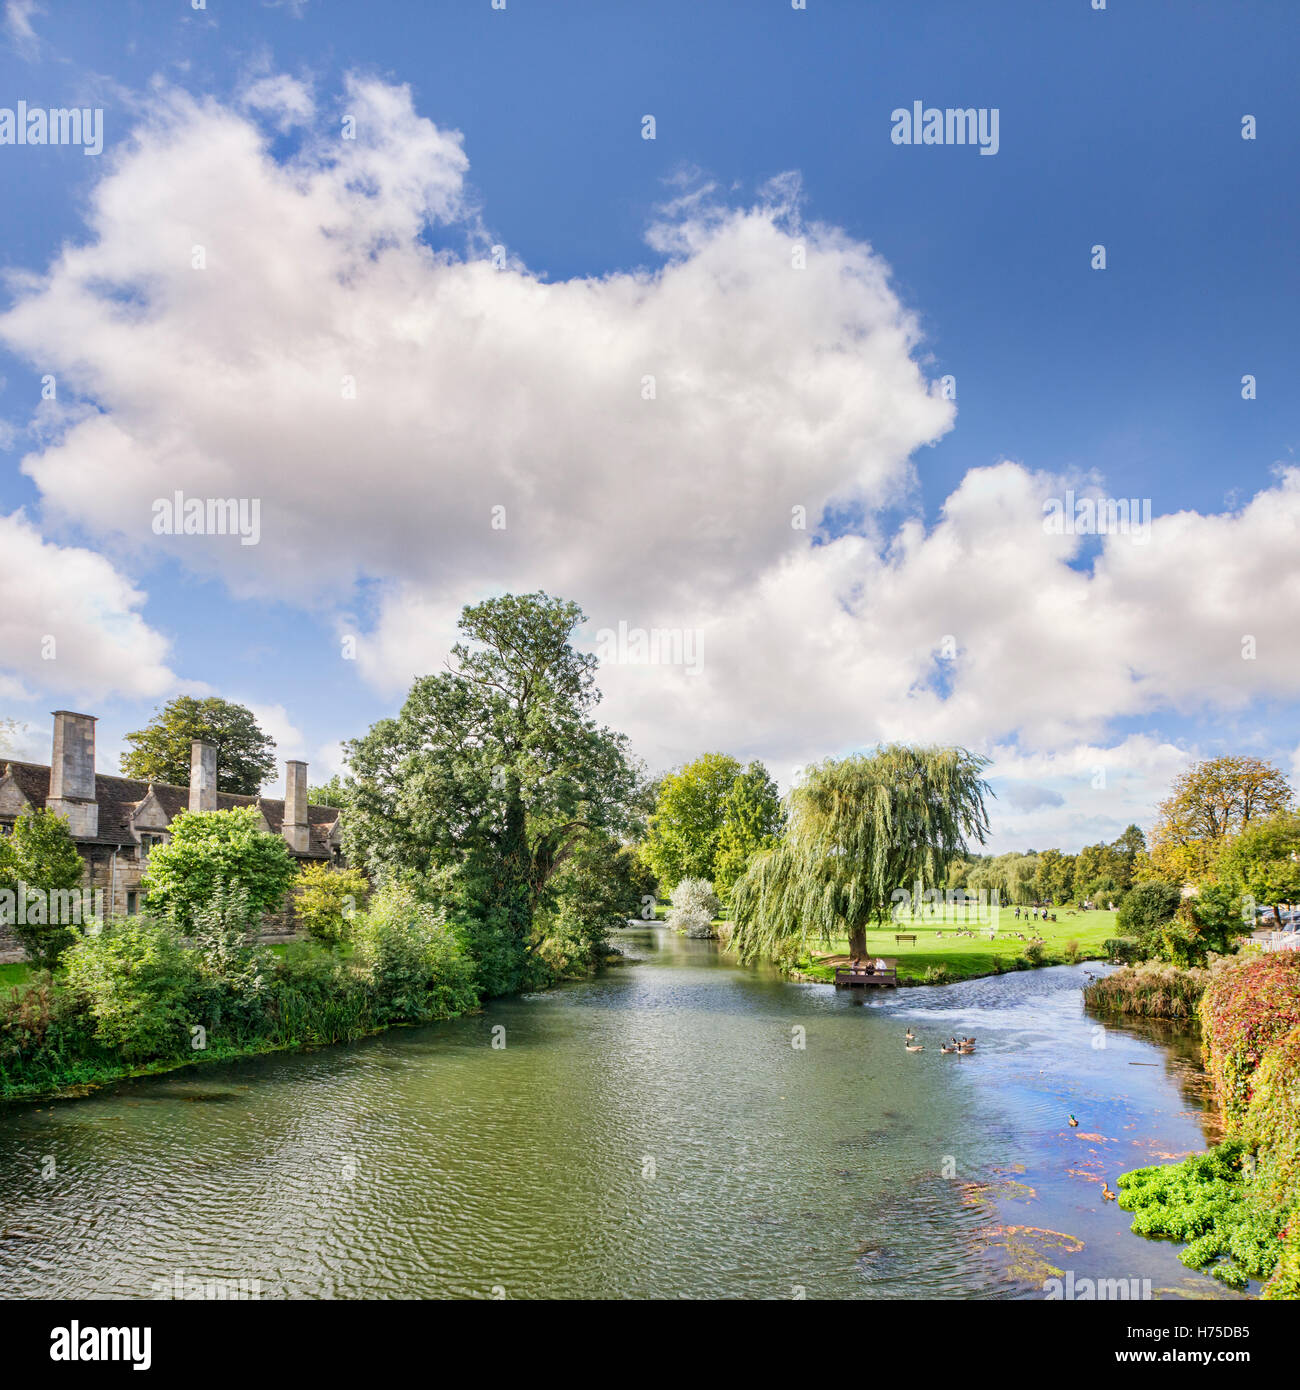 La rivière Welland, et la ville de prés, Stamford, Lincolnshire, Angleterre. Banque D'Images